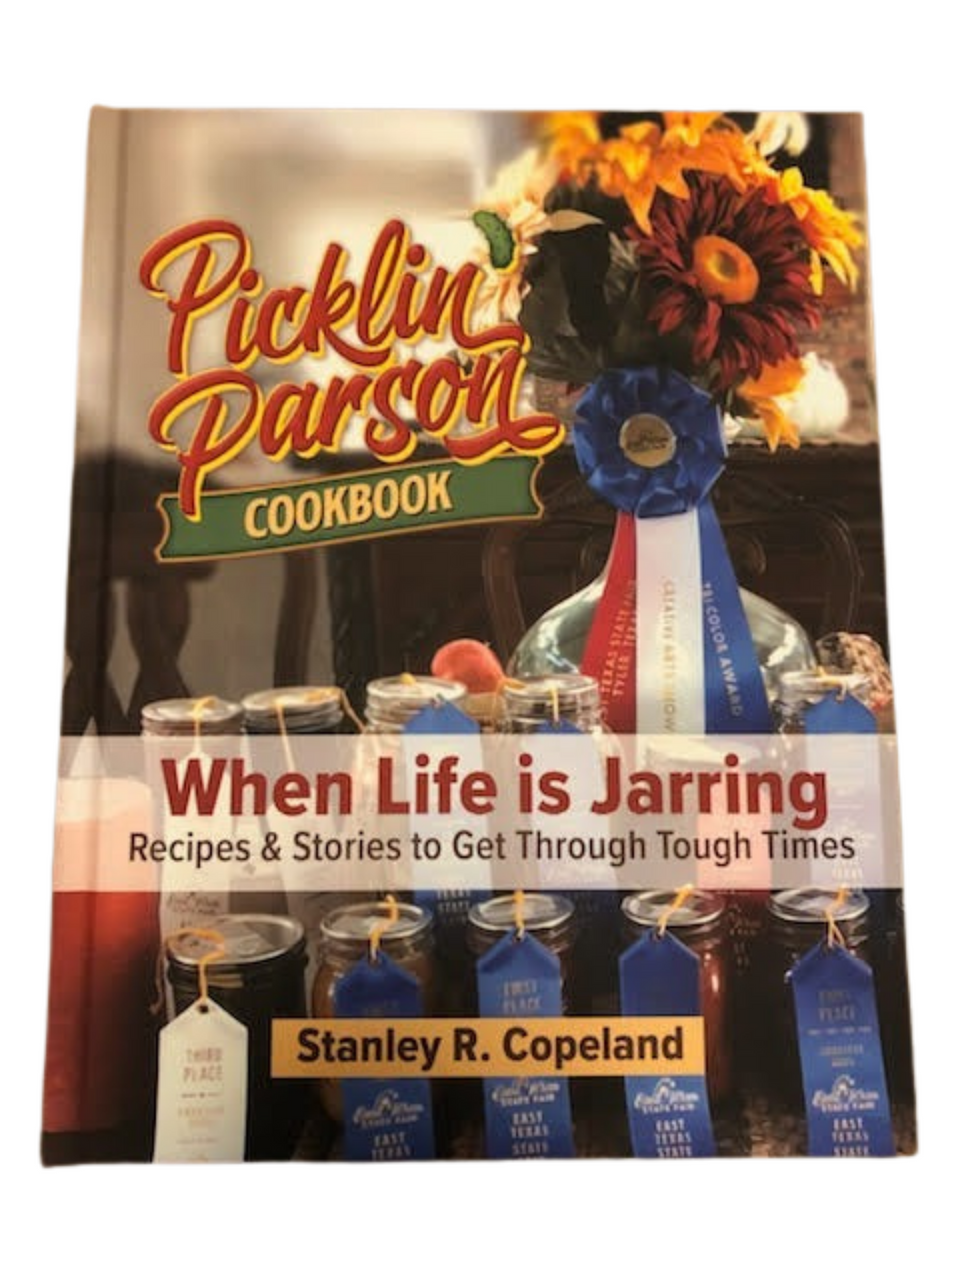 The Picklin' Parson Cookbook